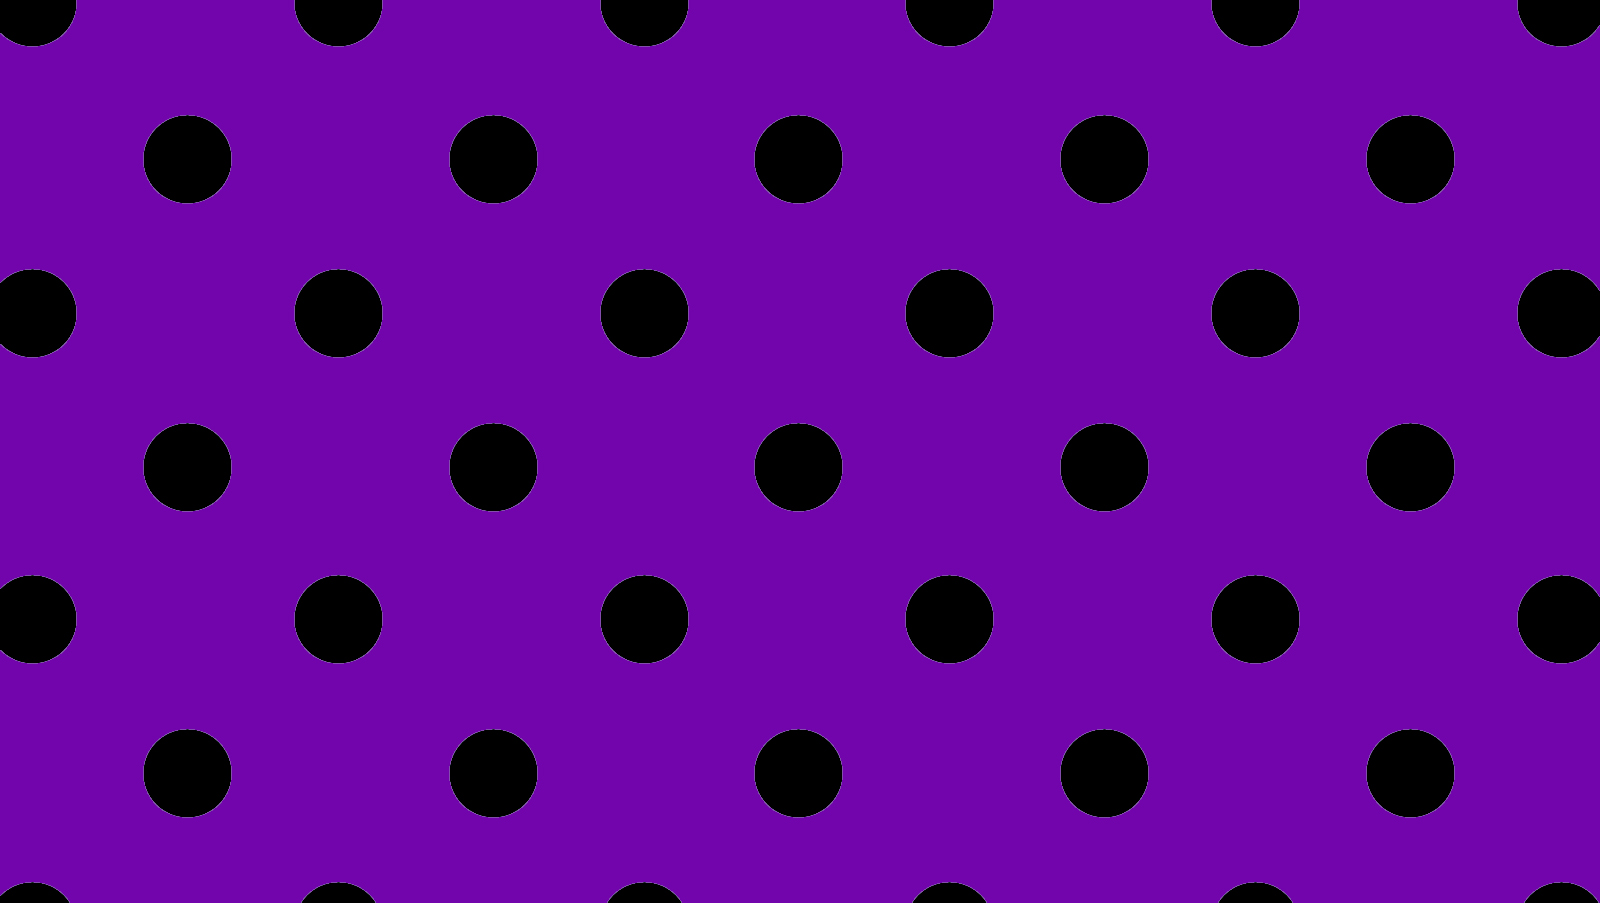 Polka Dot Wallpaper And Black Polka Dot